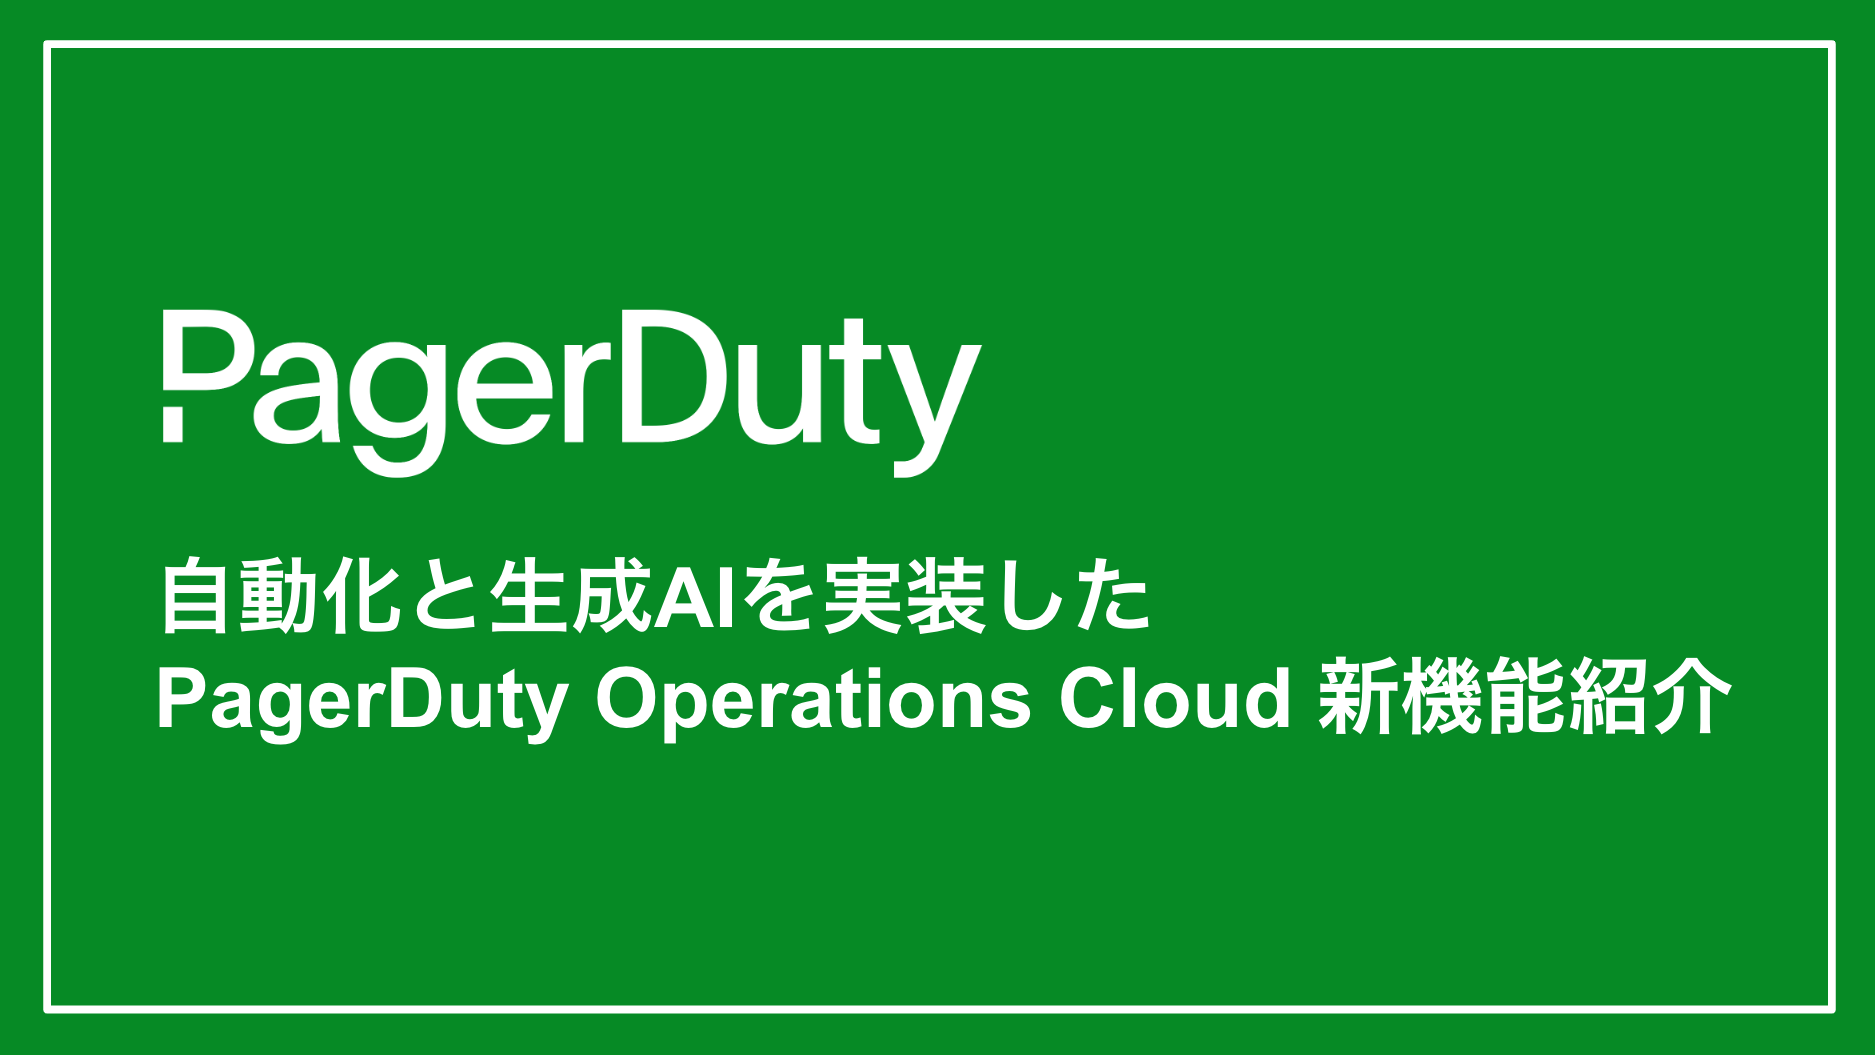 自動化・生成AIを実装したPagerDuty Operations Cloud